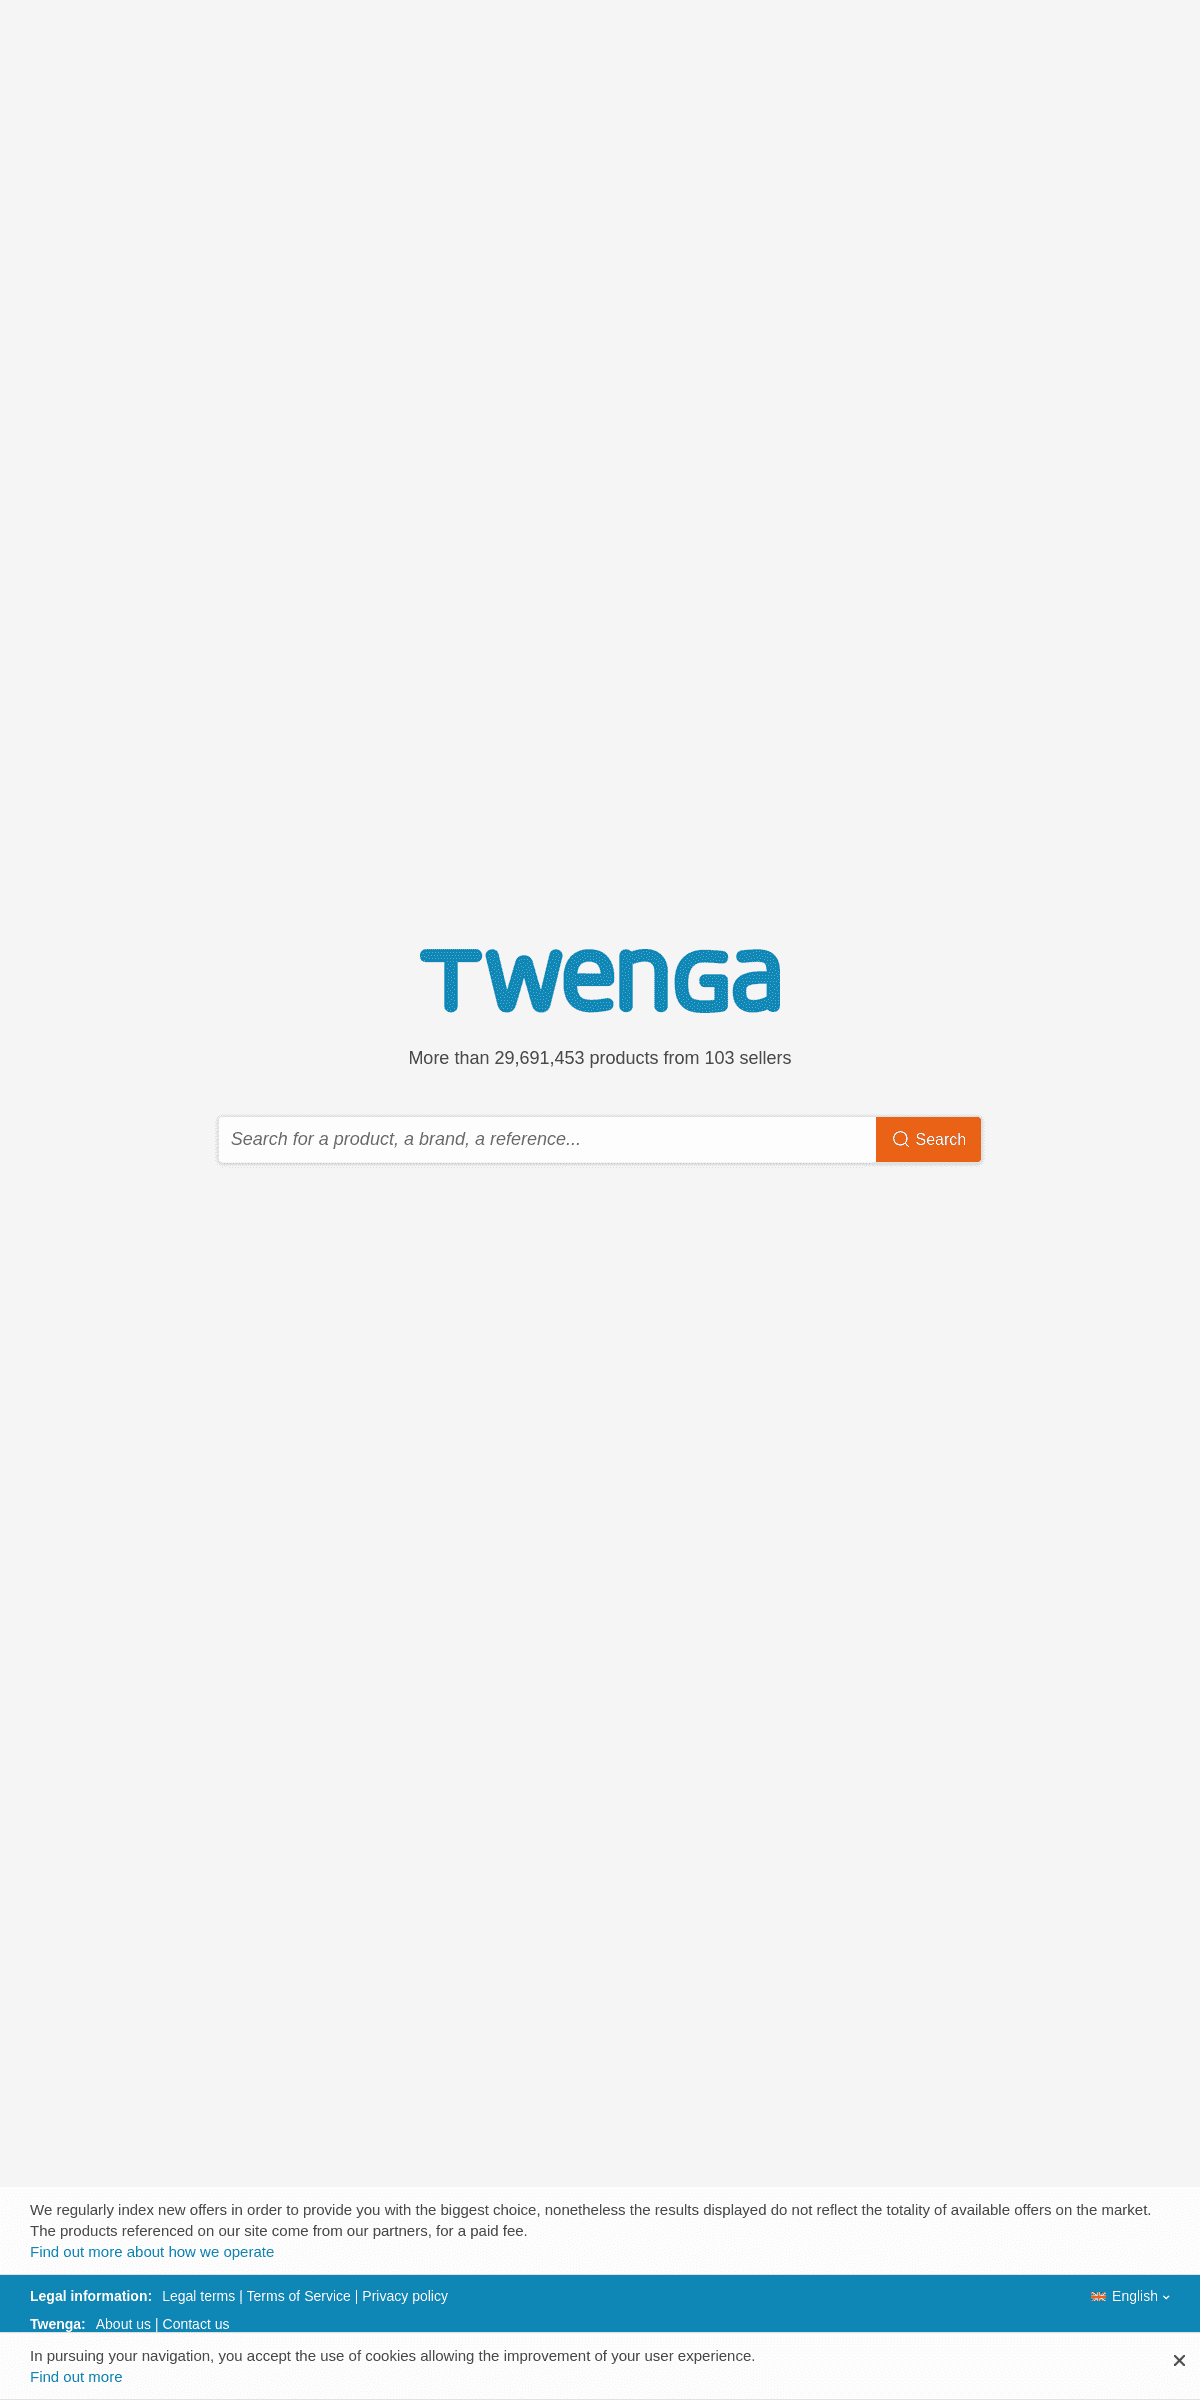 A complete backup of twenga.co.uk